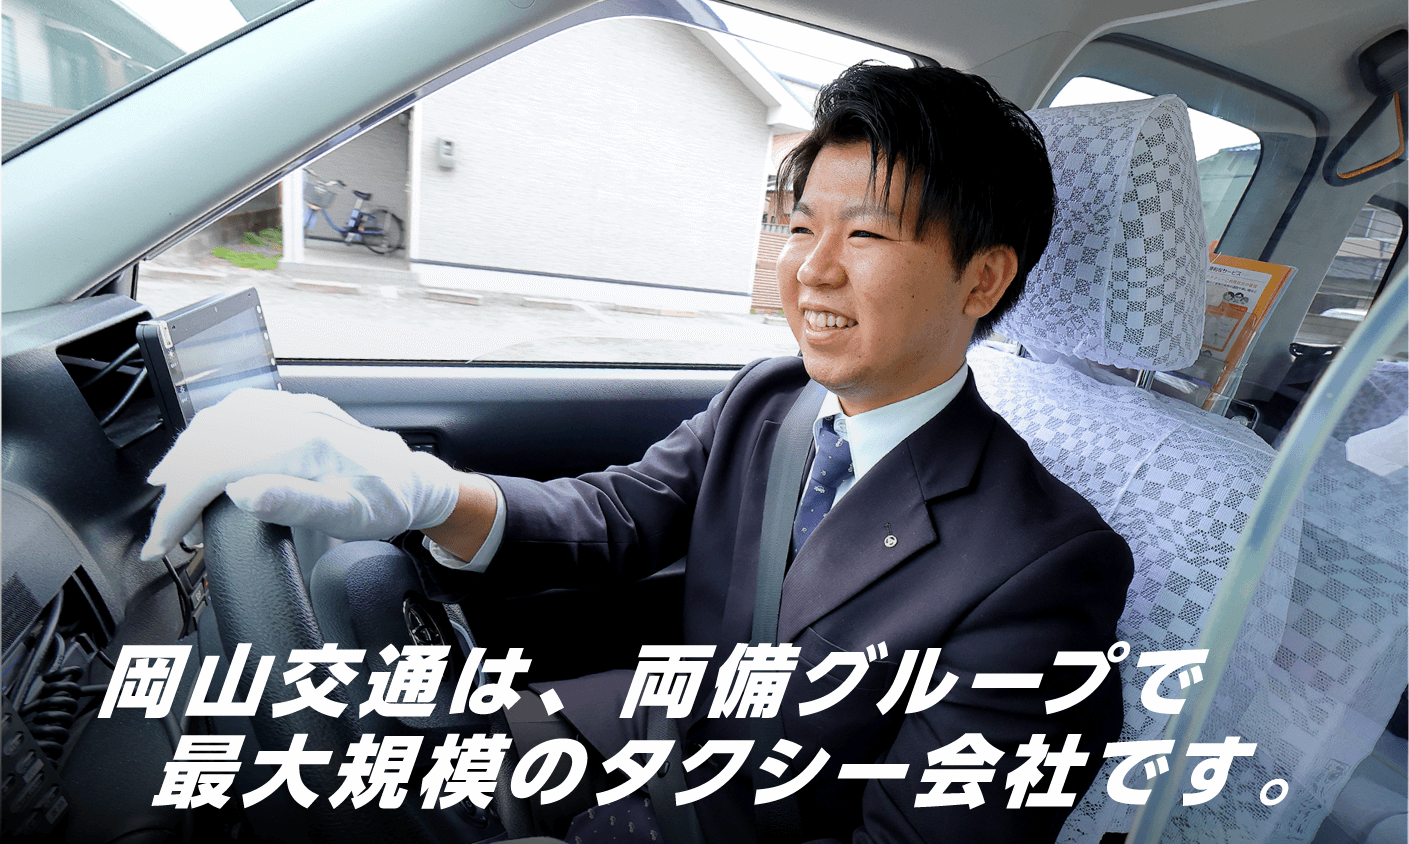 岡山交通は、両備グループで最大規模のタクシー会社です。